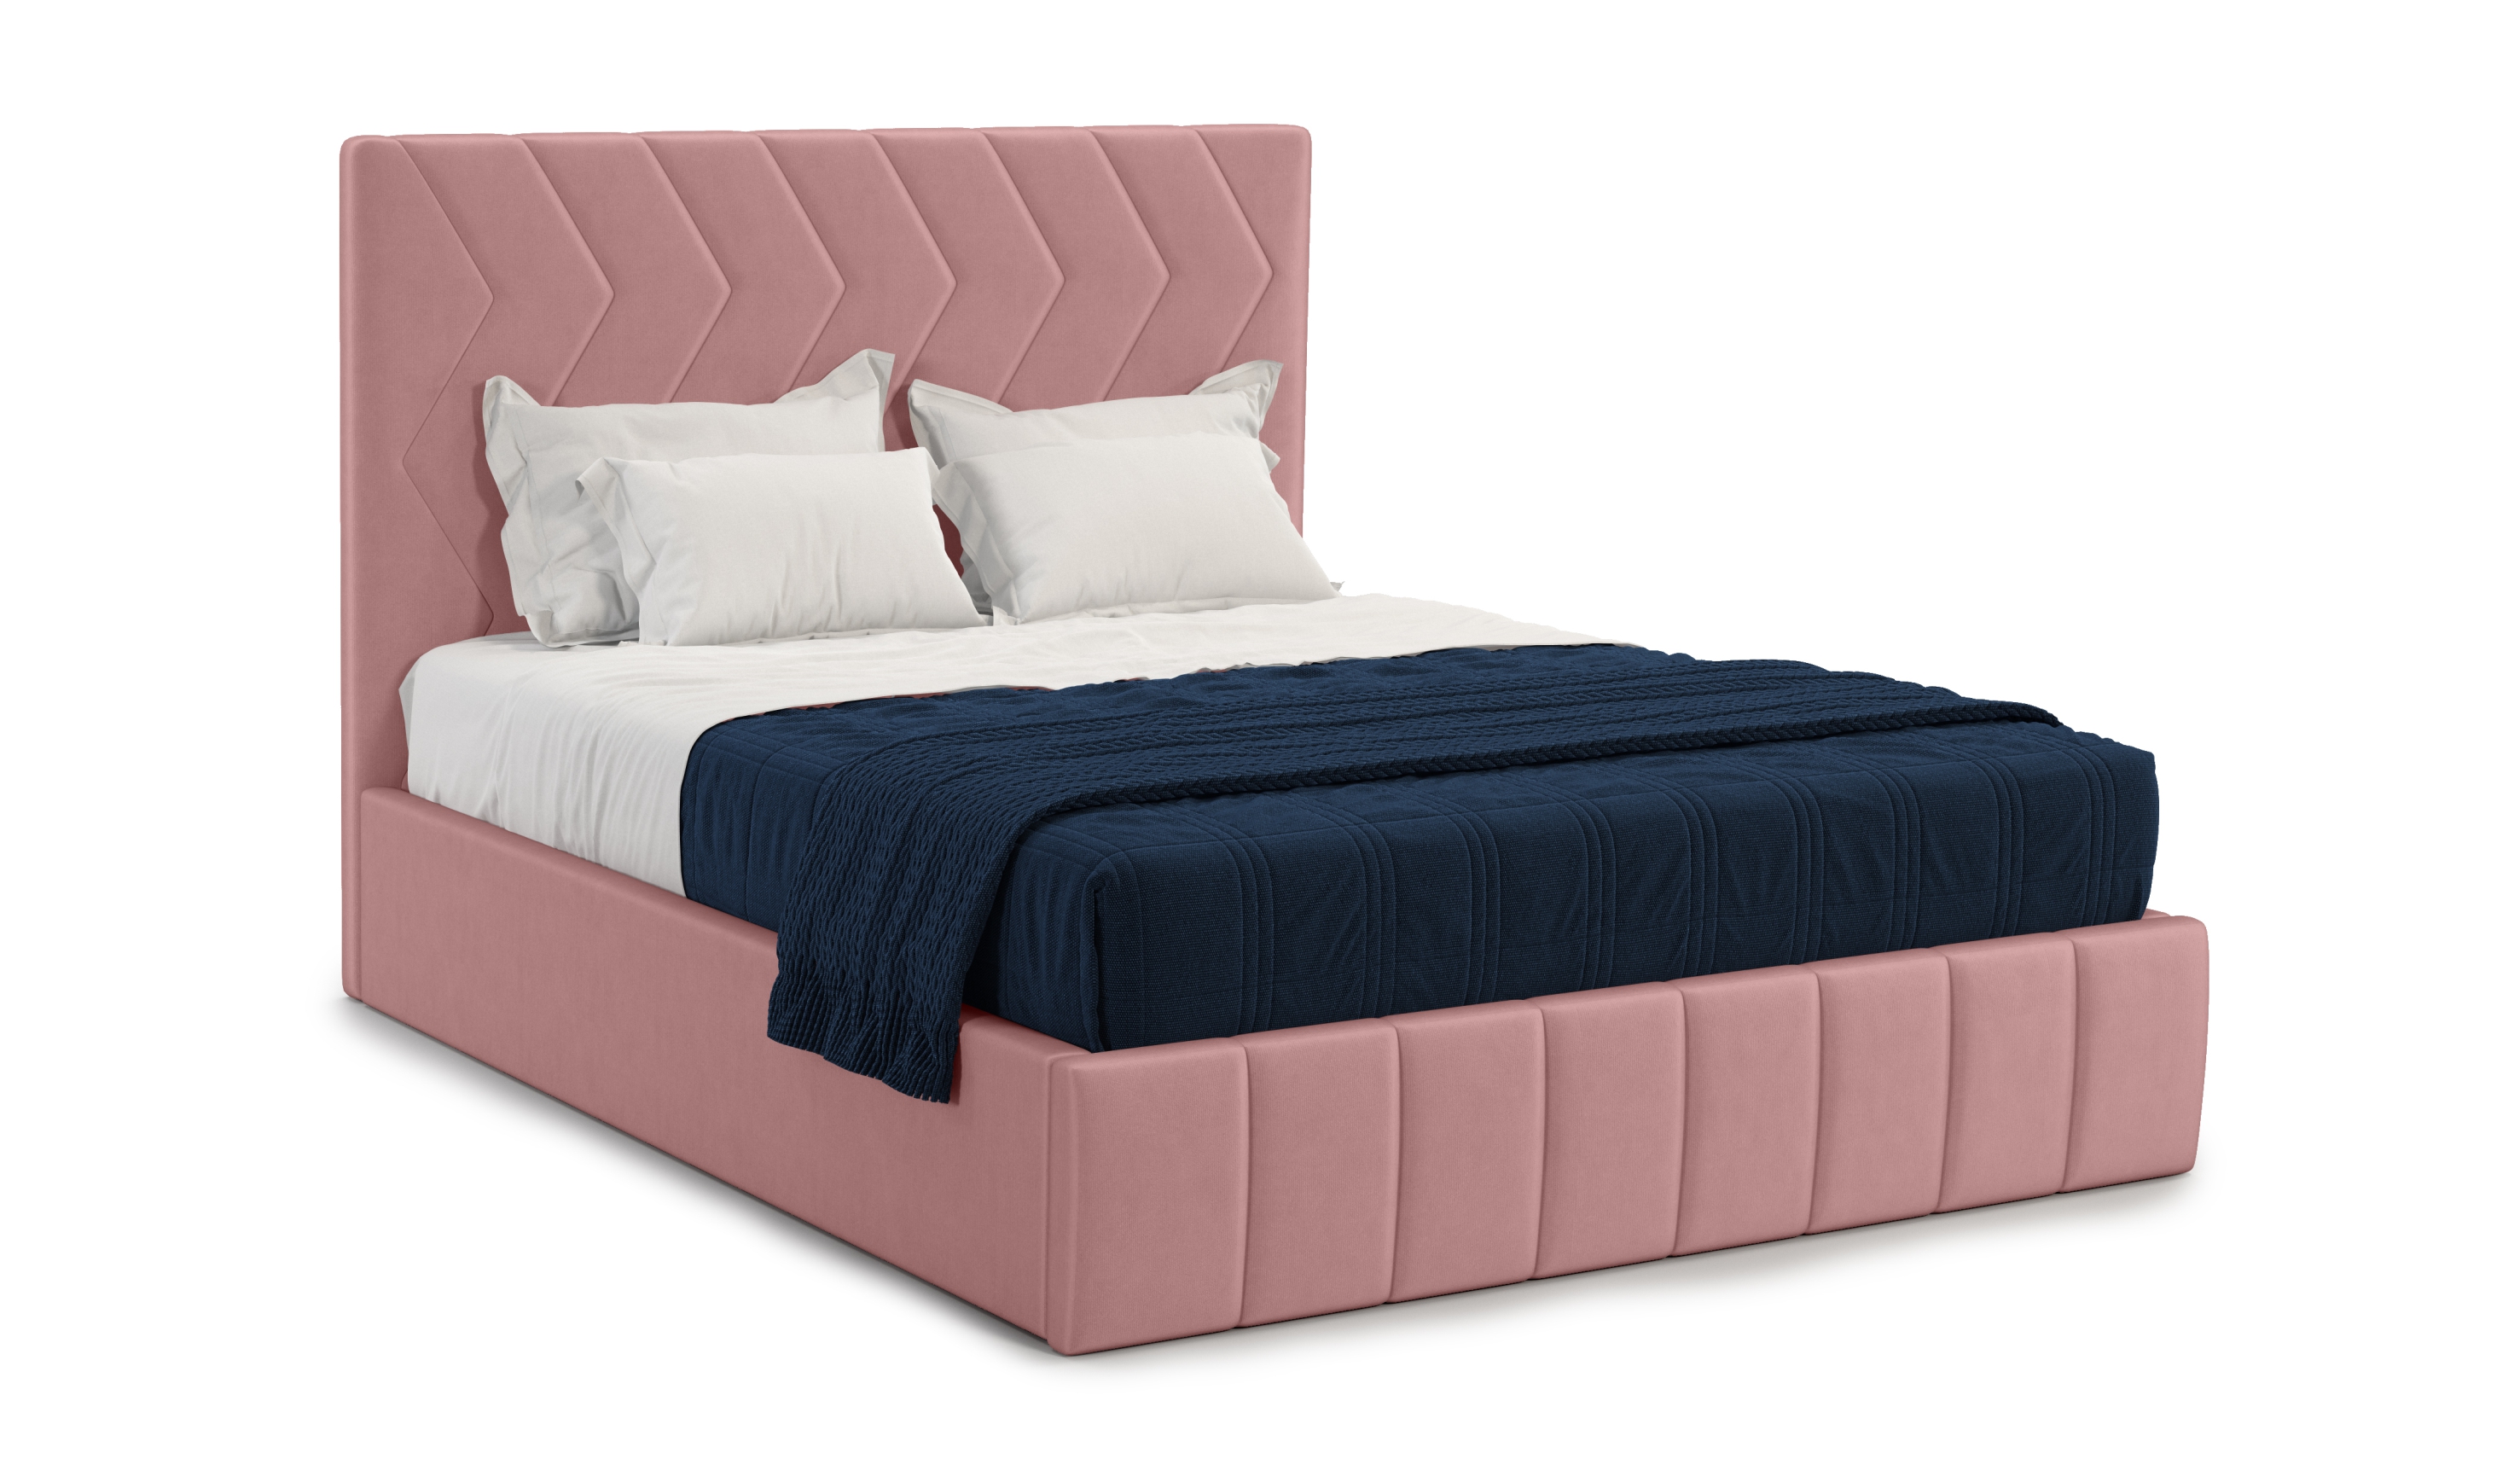 Мягкая кровать Грейс 140*200 (подъемник), цвет bingo mauve - фото 2